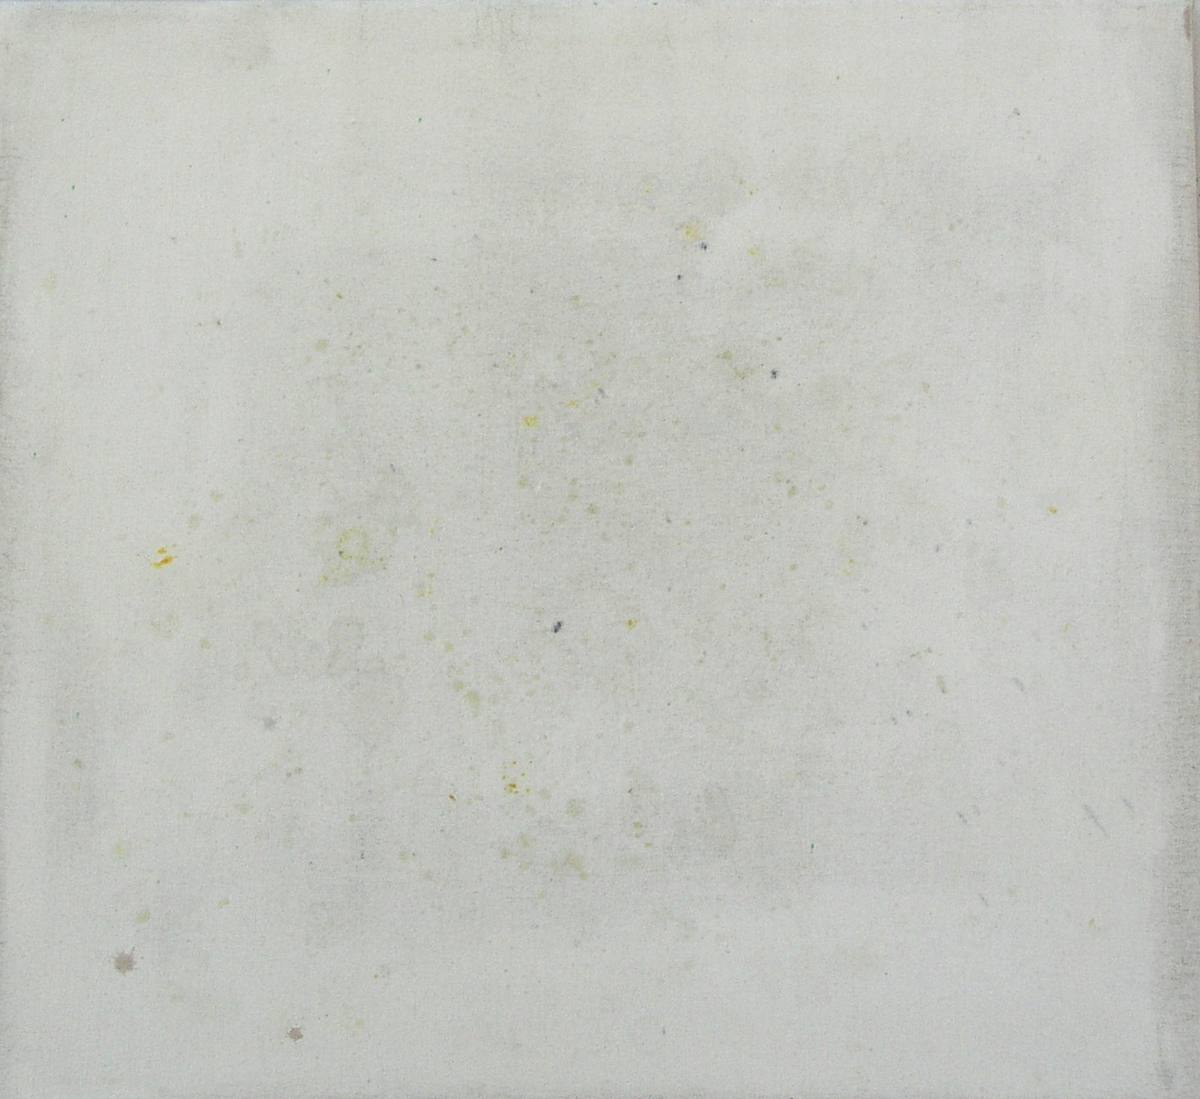 Jan Karpíšek - Diplomová práce: Pomeranče, přírodní pigmenty (silice z pomerančové kůry) na plátně, 2005